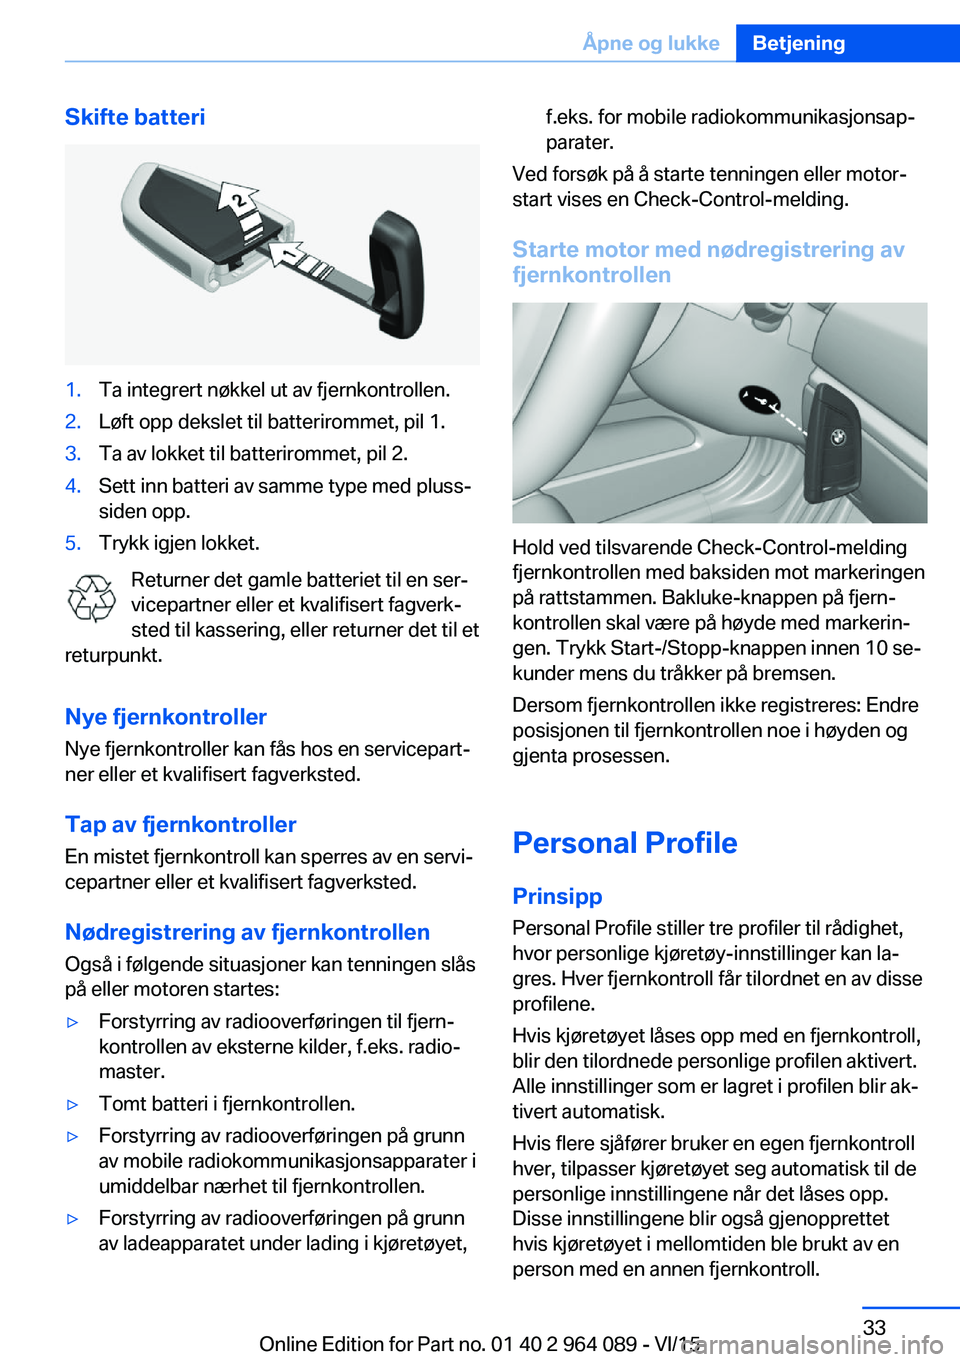 BMW X5 M 2016  InstruksjonsbØker (in Norwegian) Skifte batteri1.Ta integrert nøkkel ut av fjernkontrollen.2.Løft opp dekslet til batterirommet, pil 1.3.Ta av lokket til batterirommet, pil 2.4.Sett inn batteri av samme type med pluss-
siden opp.5.